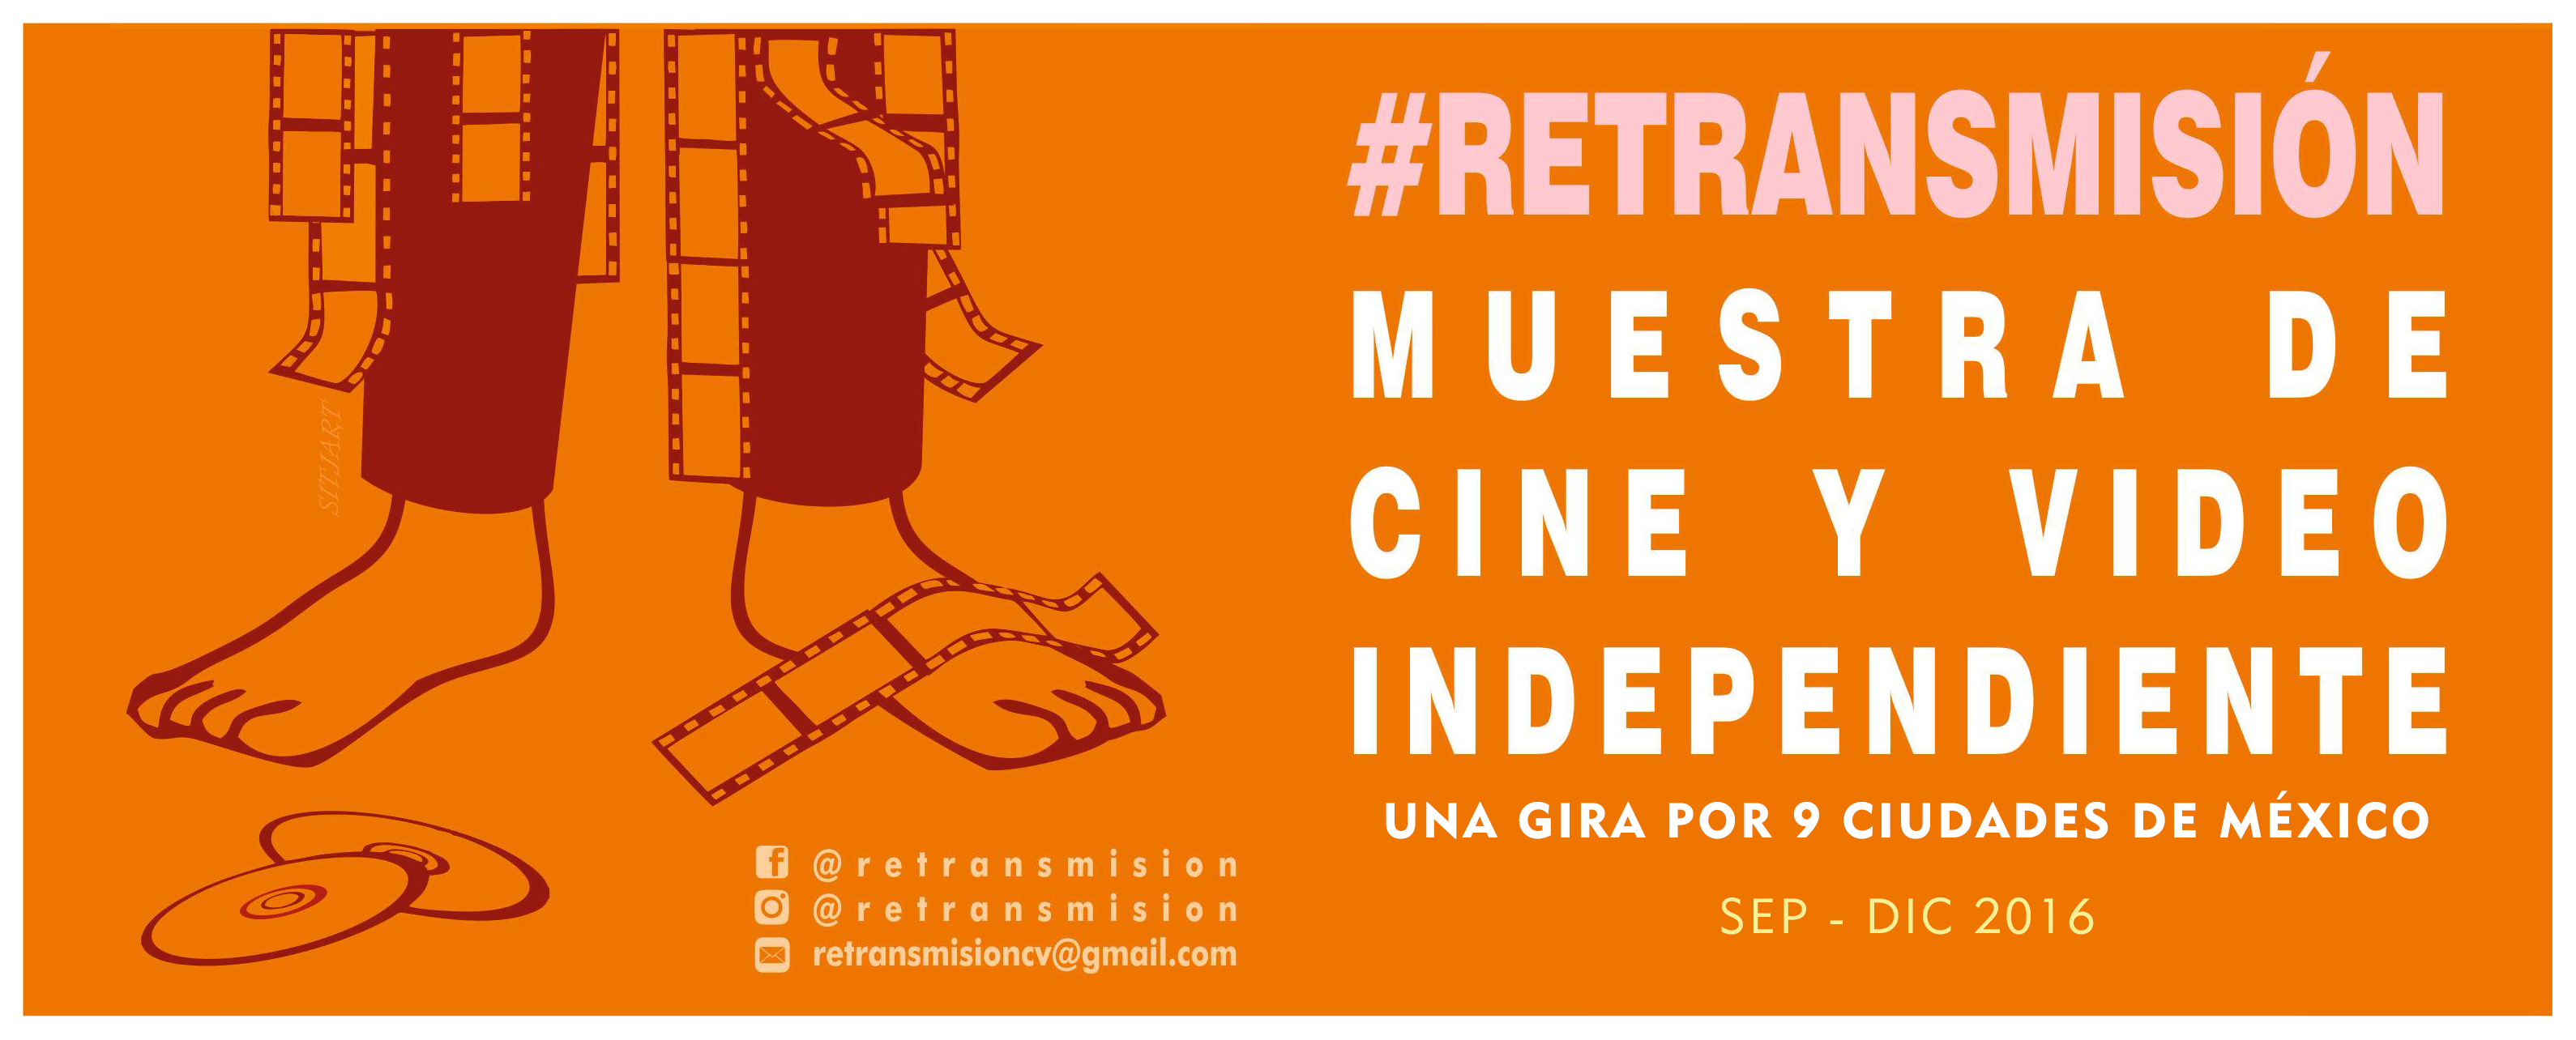 Poster 1 Retransmisión 2016 Cine Independiente y Video Independiente